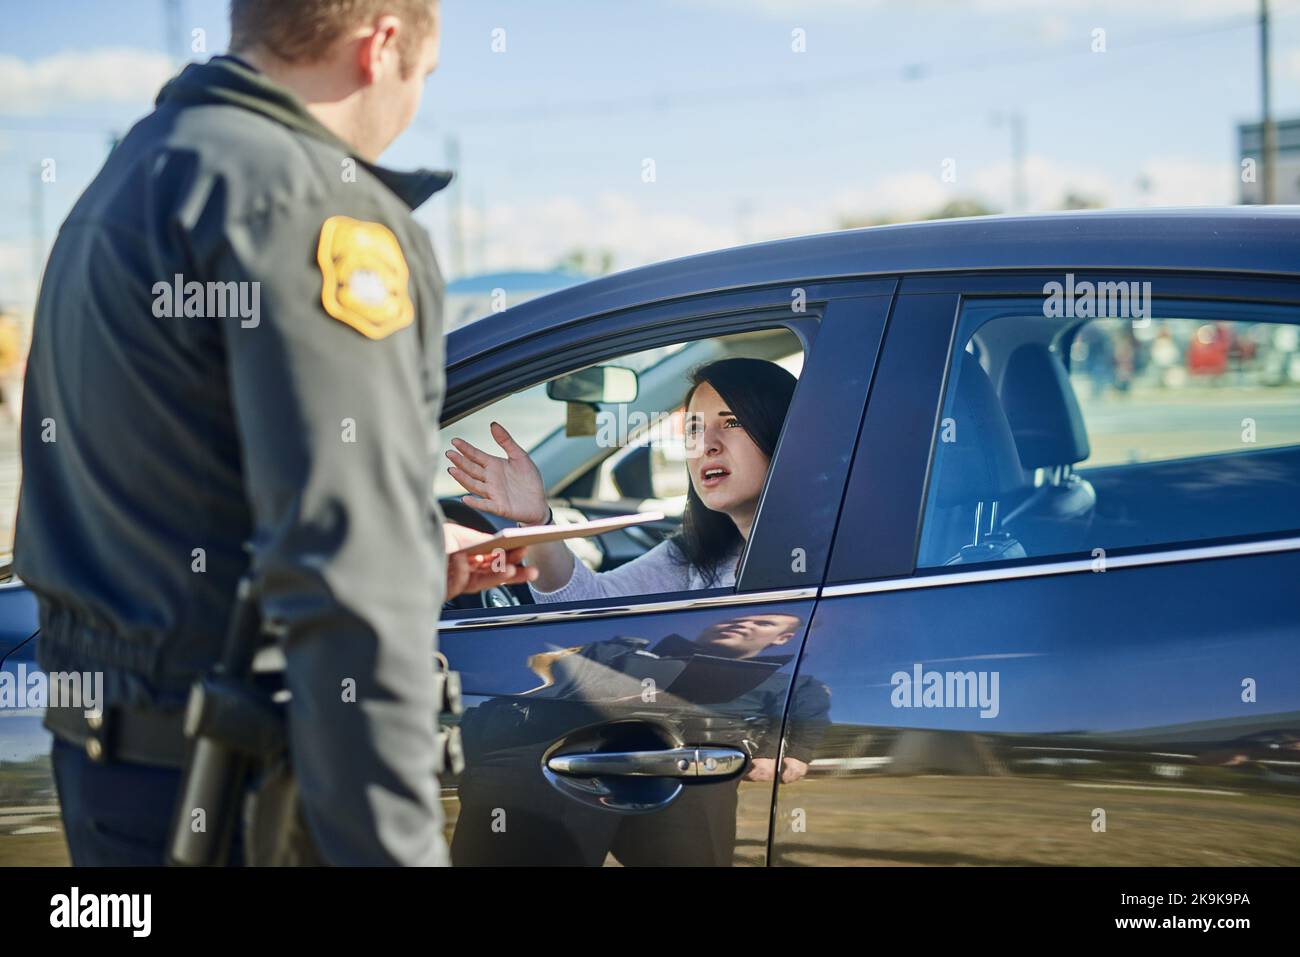 Bitte unterschreibt dies, Maam. Ein nicht erkennbarer männlicher Verkehrsbeamter, der an einer Straßensperre eine Fahrkarte an eine Zivilin ausstellt. Stockfoto